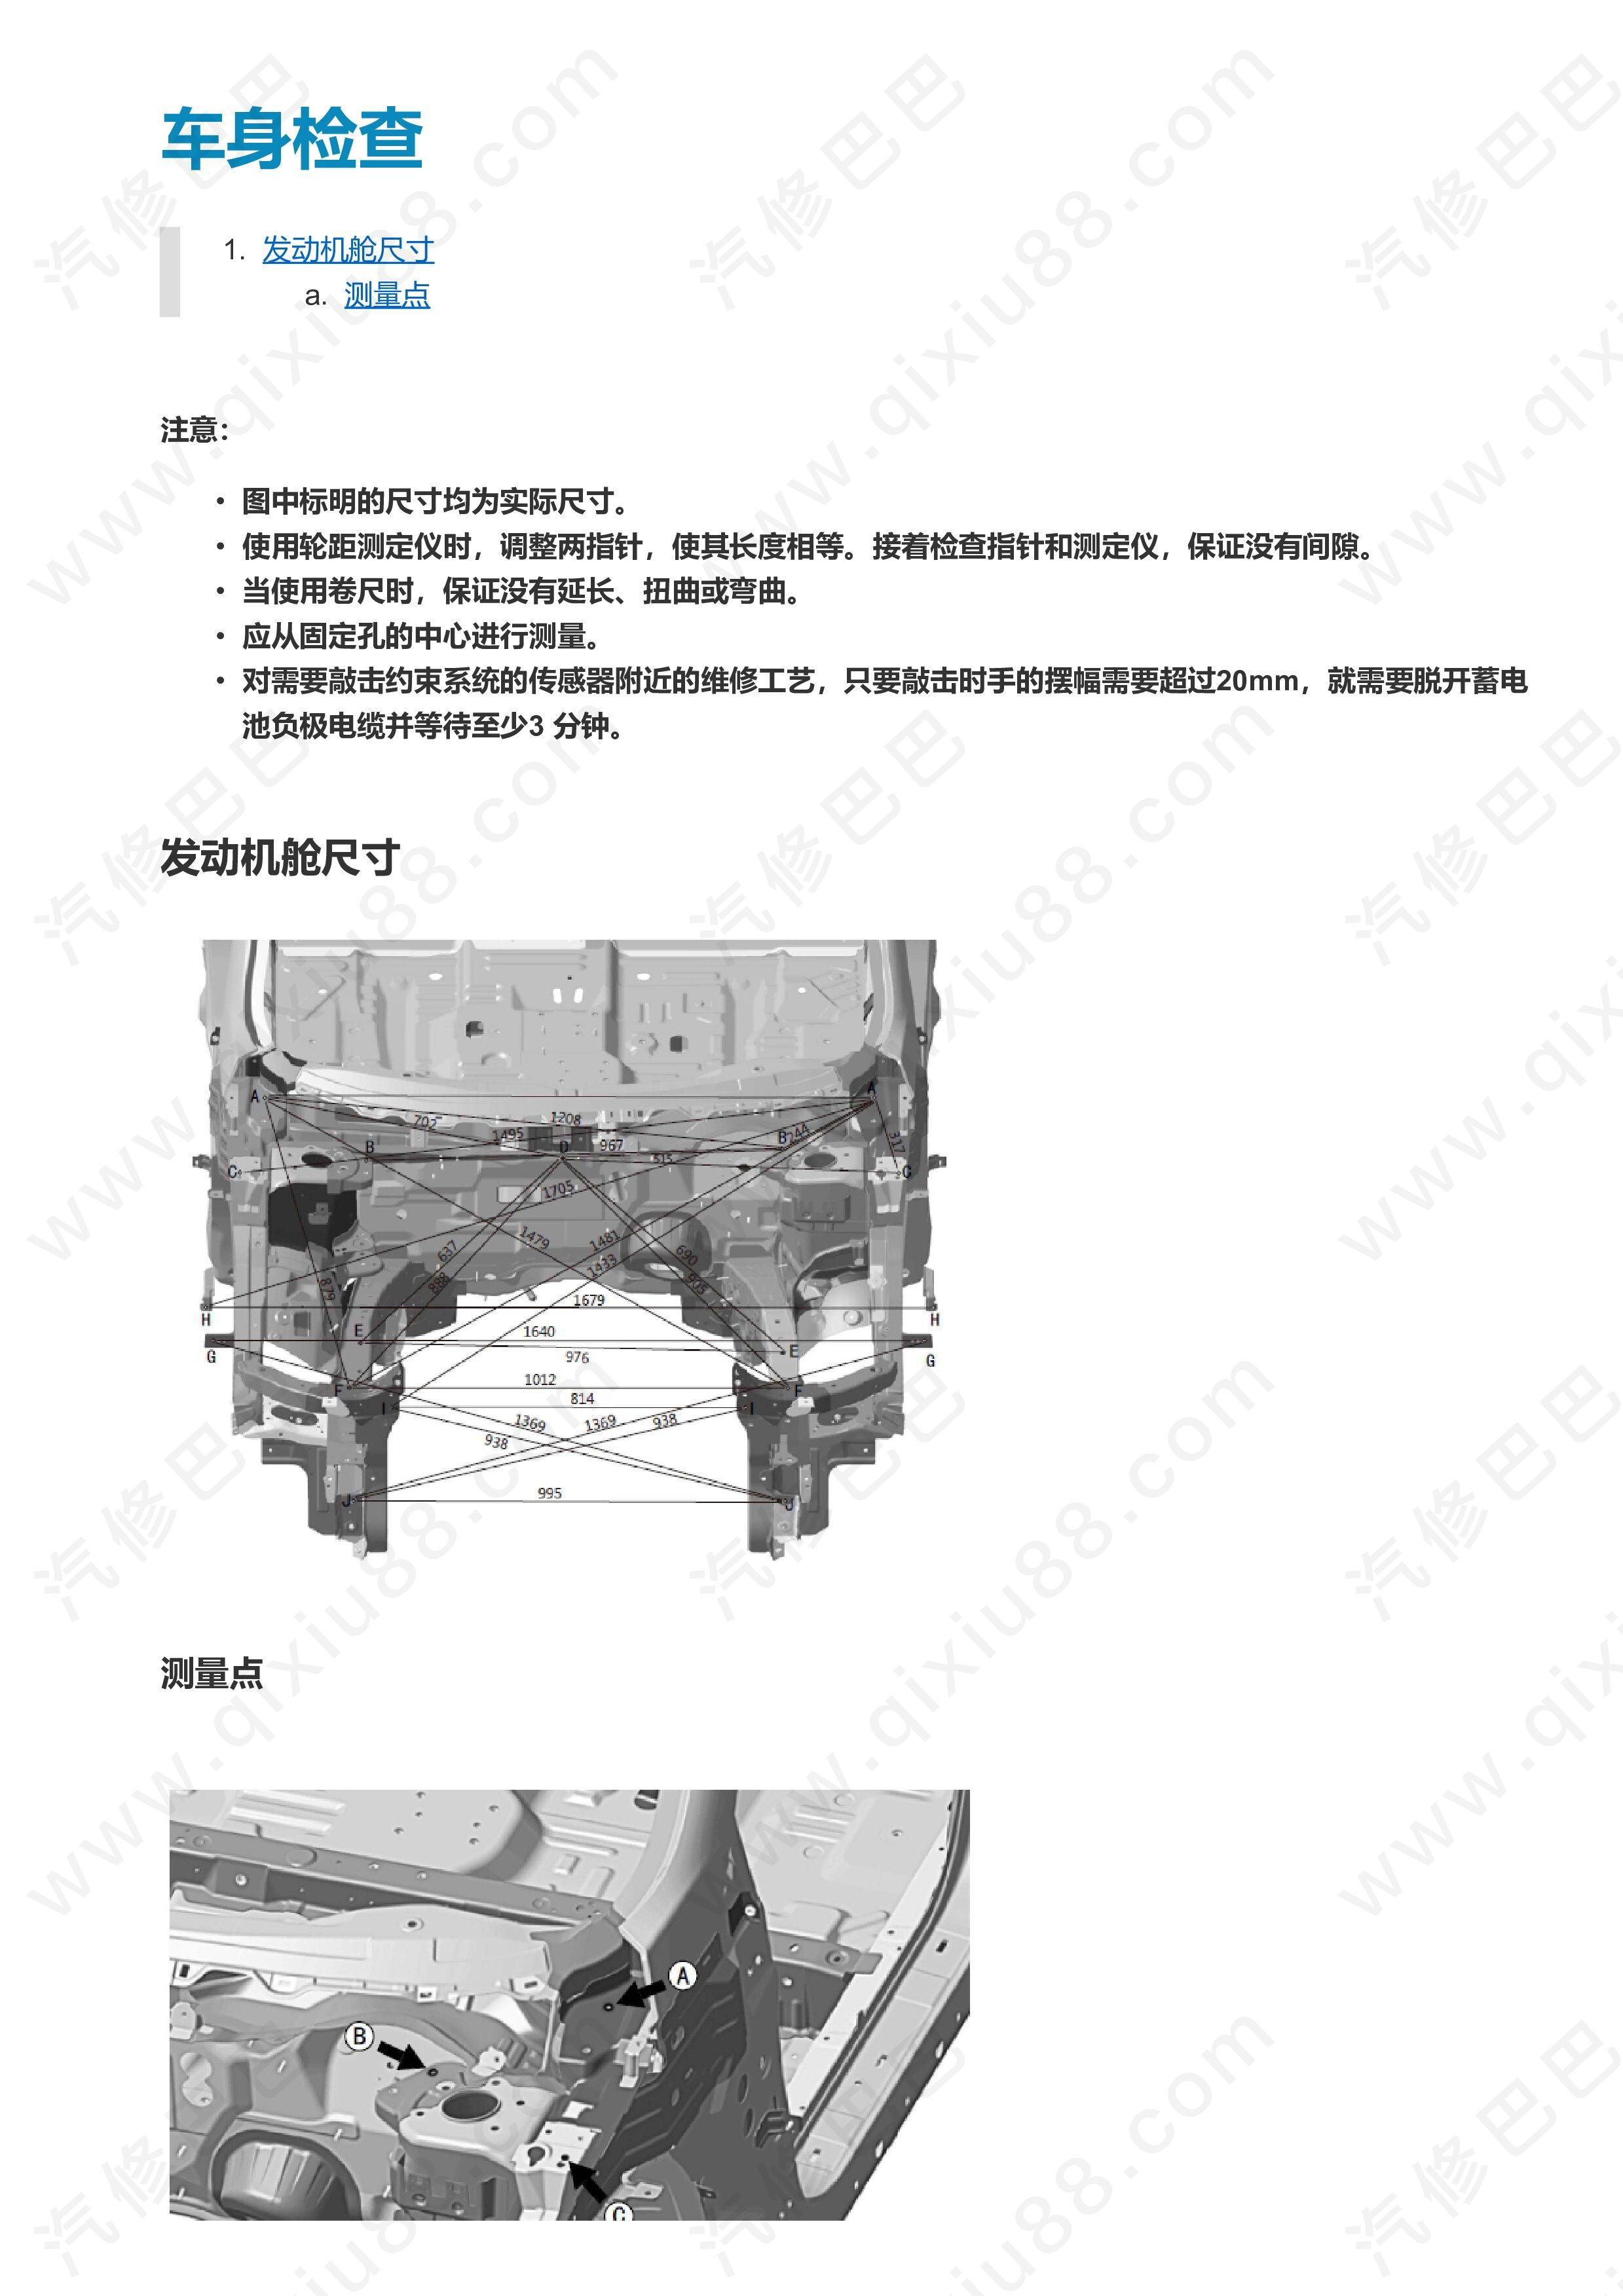 郑州日产东风风度MX5车身维修手册 车身尺寸